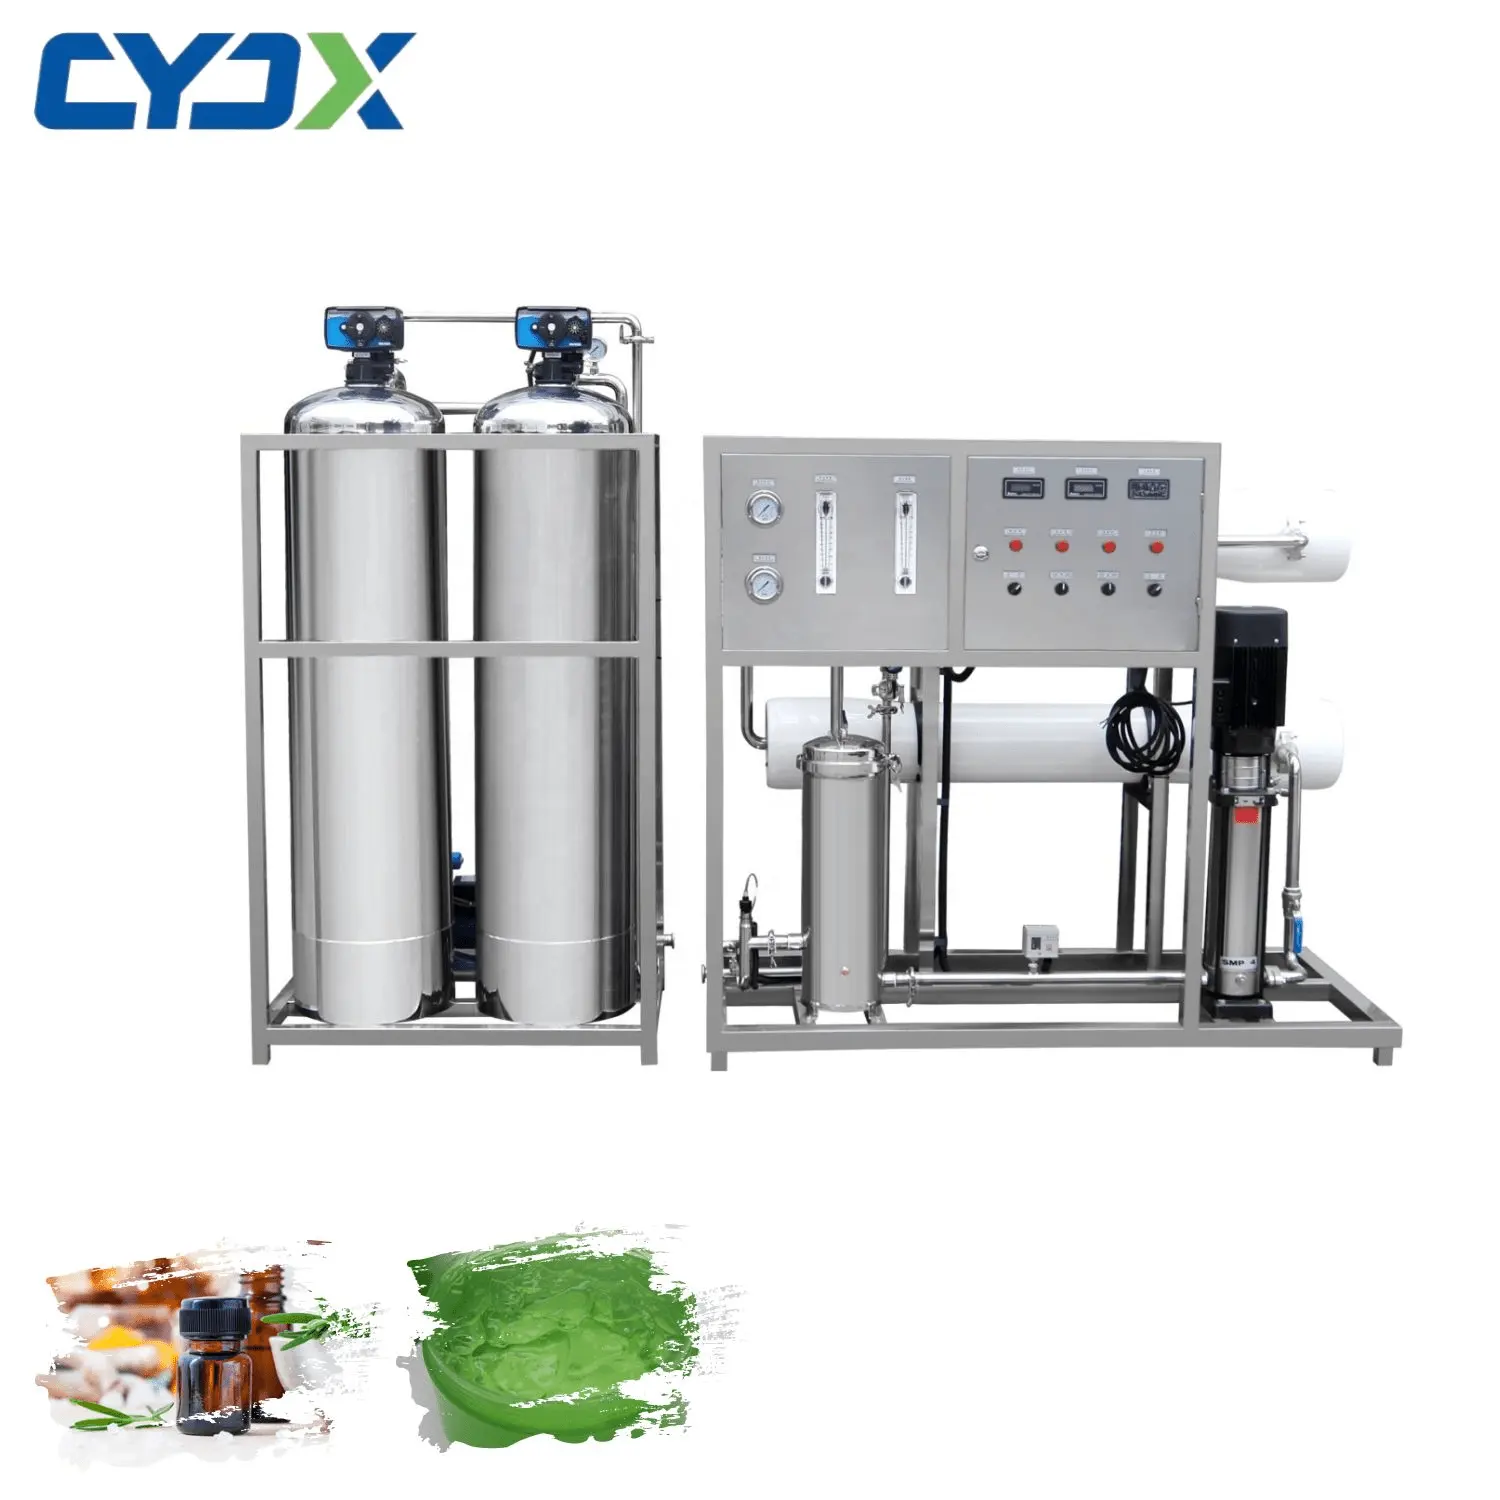 CYJX 50% Rabatt Wasseranlage Ro Reinigungs system Wasser aufbereitung maschinen Umkehrosmose Reinwasser filtersystem